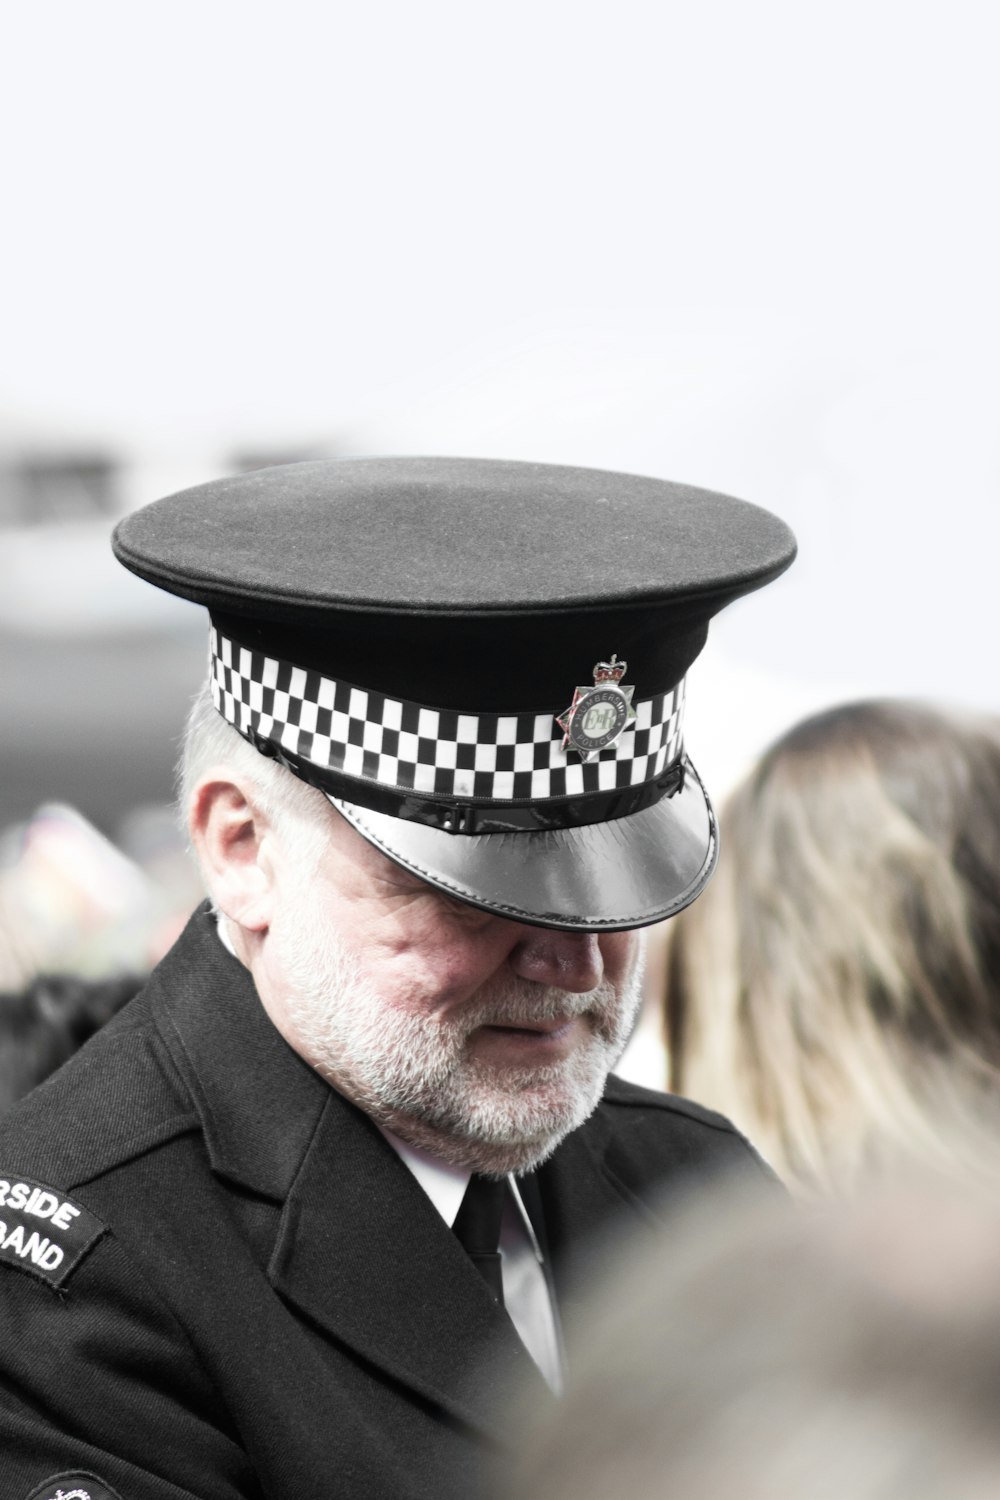 police man wearing white and black peak hat